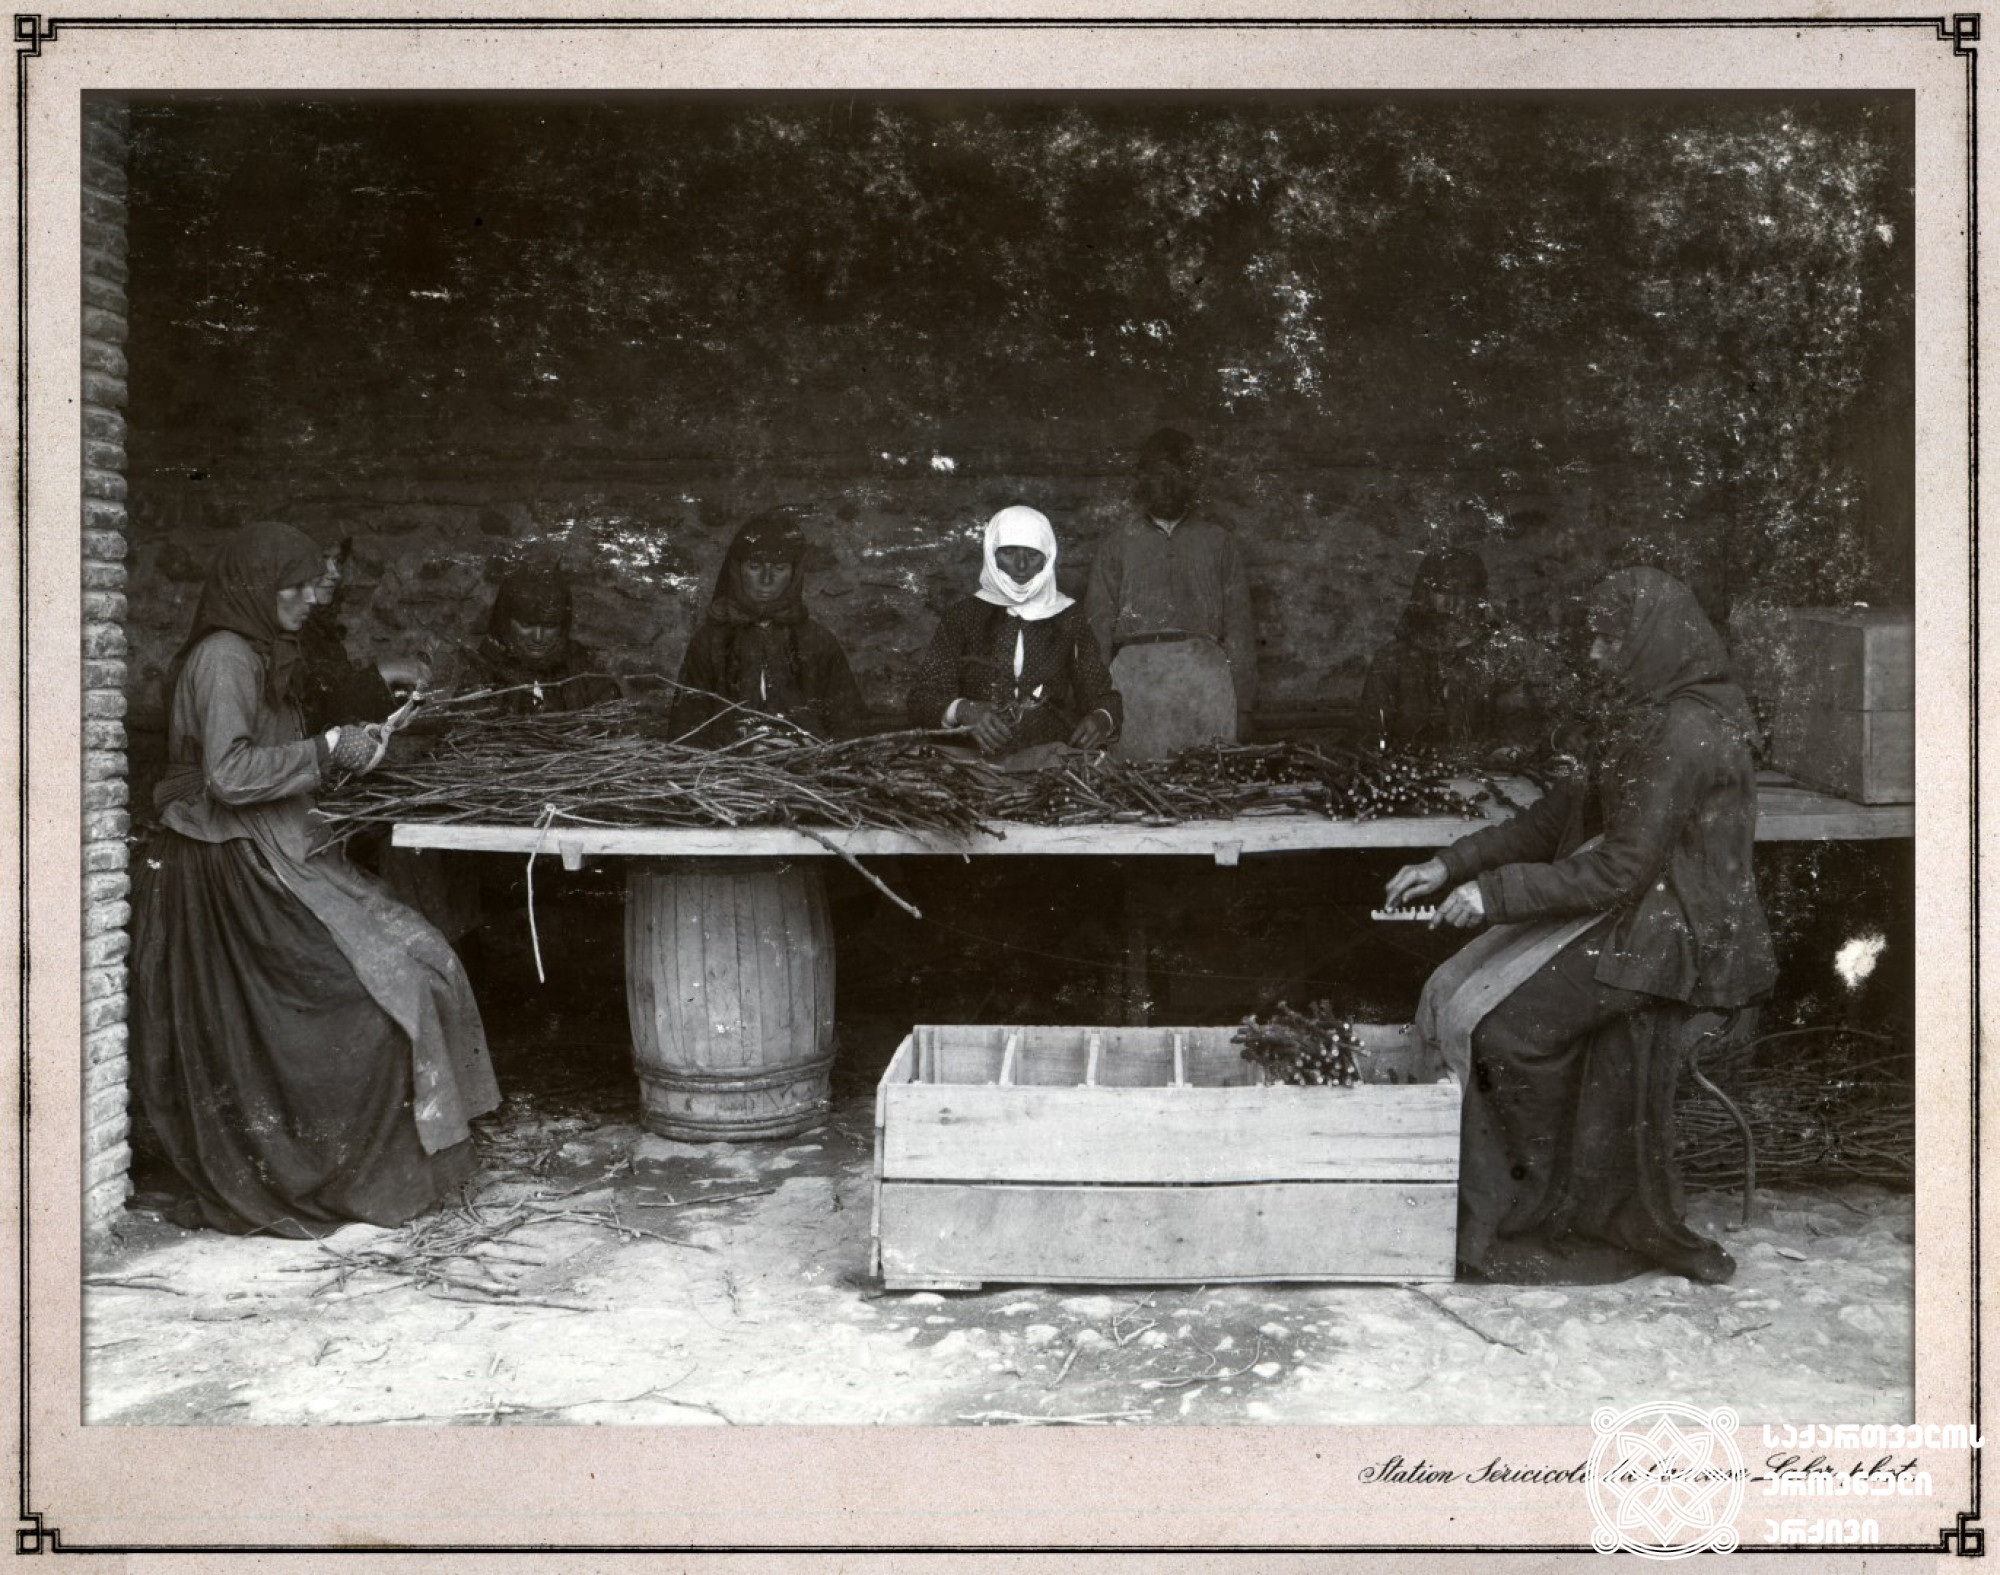 ქალები არჩევენ ლერწამს ვაზის დასამყნობად <br>
კახეთი, 1900-1905 წლები. ფოტო: კონსტანტინე ზანისი <br>

Women are choosing the reed for grafting <br>
Kakheti, 1900-1905 <br>
Photo by Konstantin Zanis